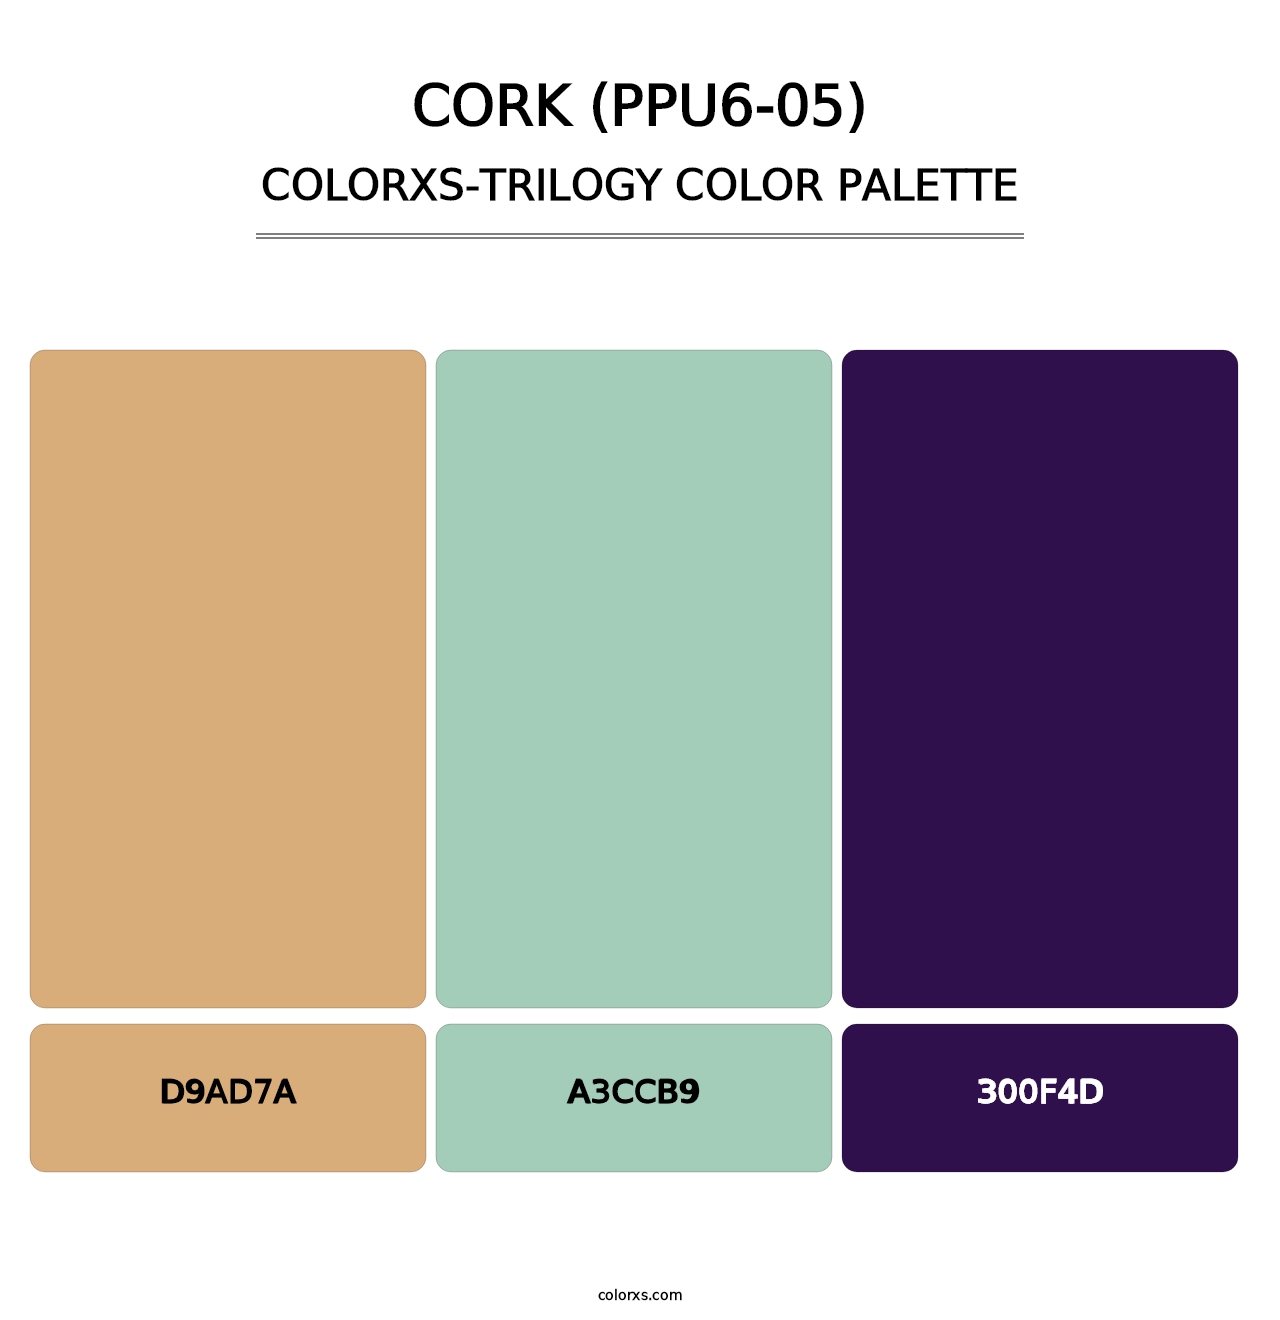 Cork (PPU6-05) - Colorxs Trilogy Palette